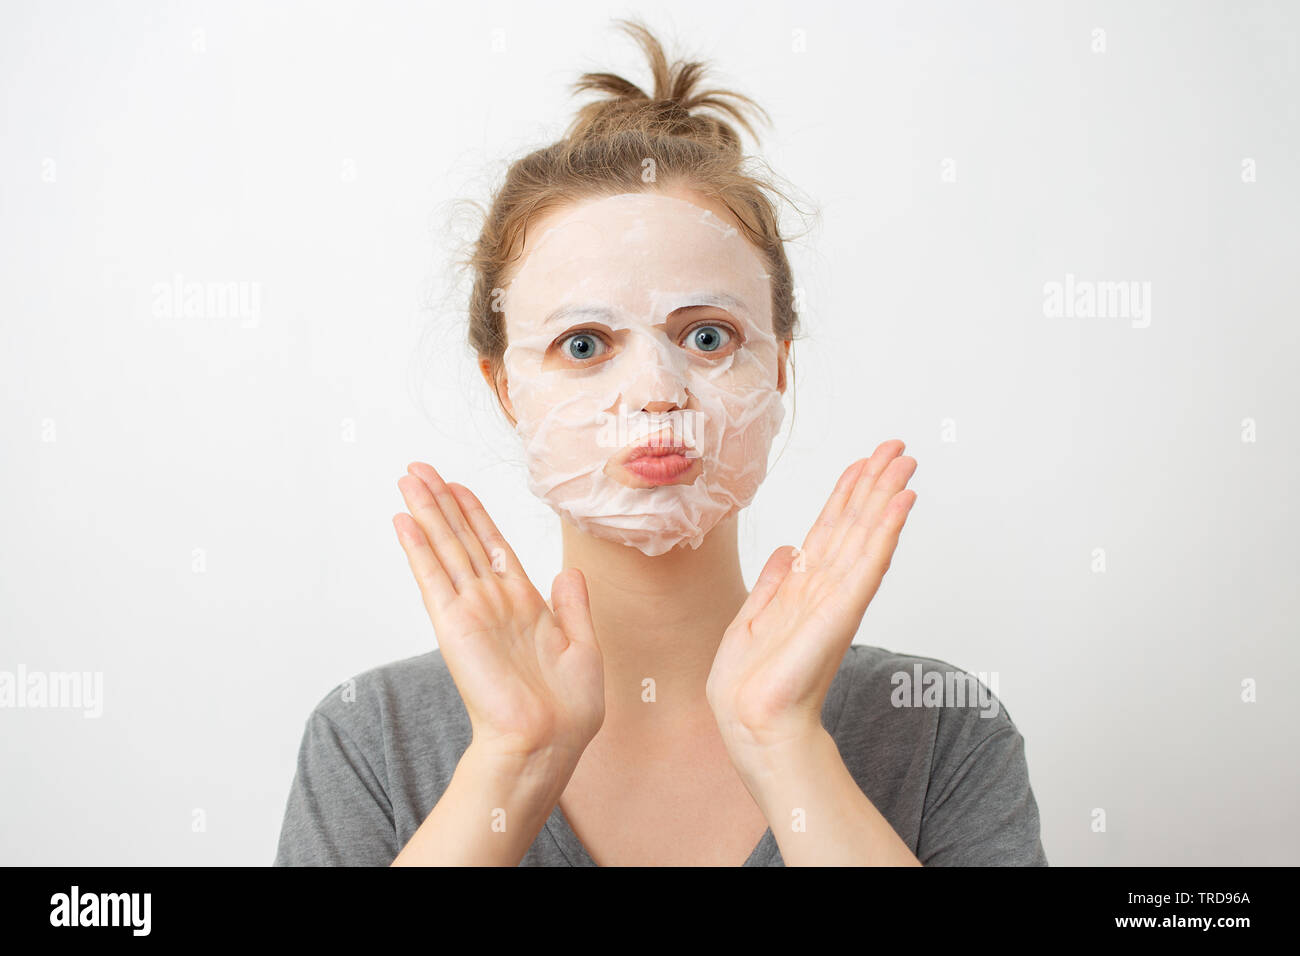 Jeune femme de race blanche avec masque facial blanc froissé sur son visage Banque D'Images